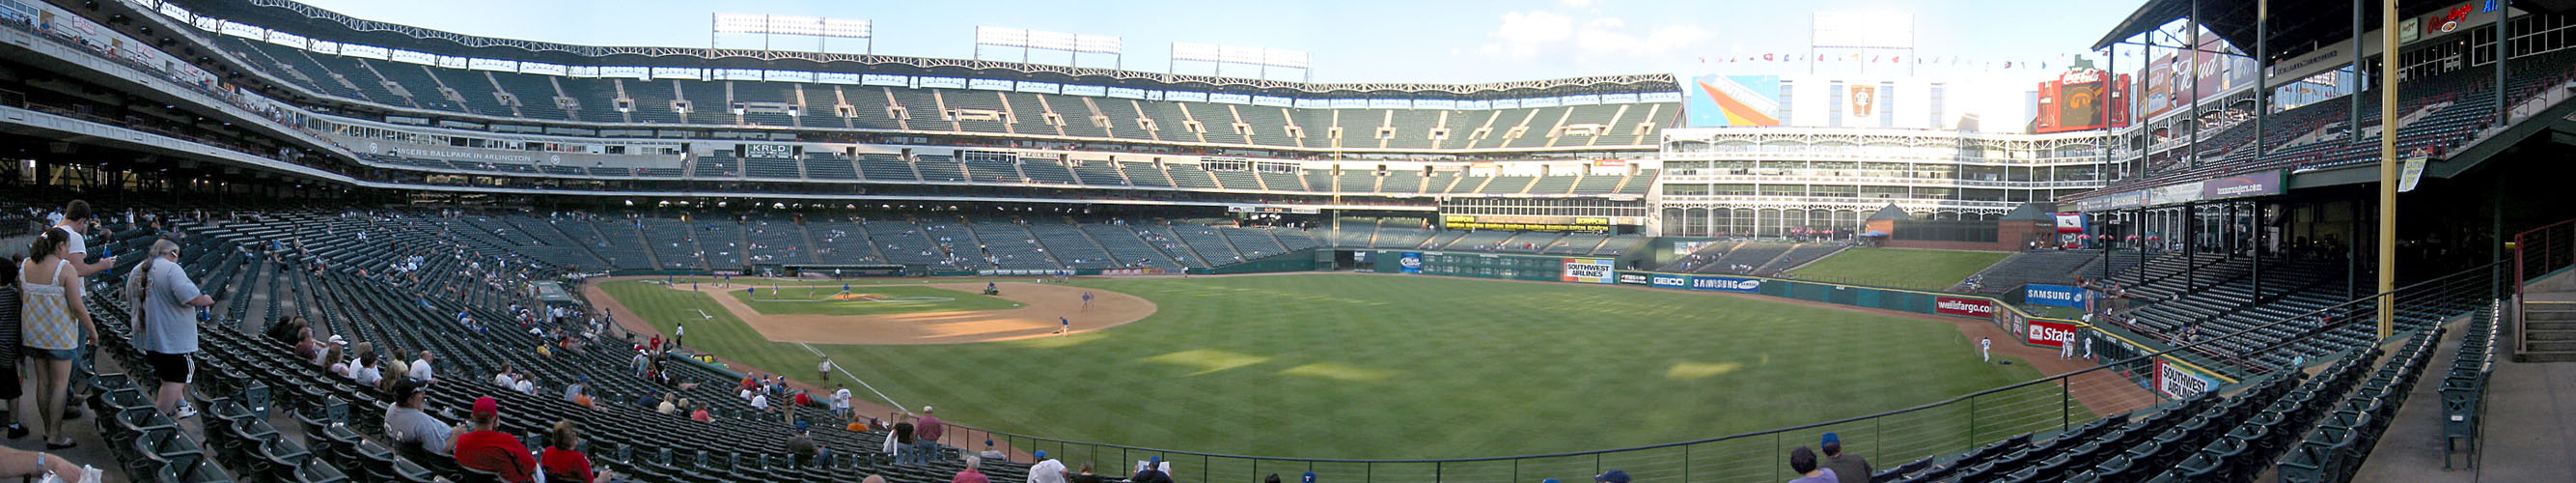 [ Panorama of Rangers Ballpark ]